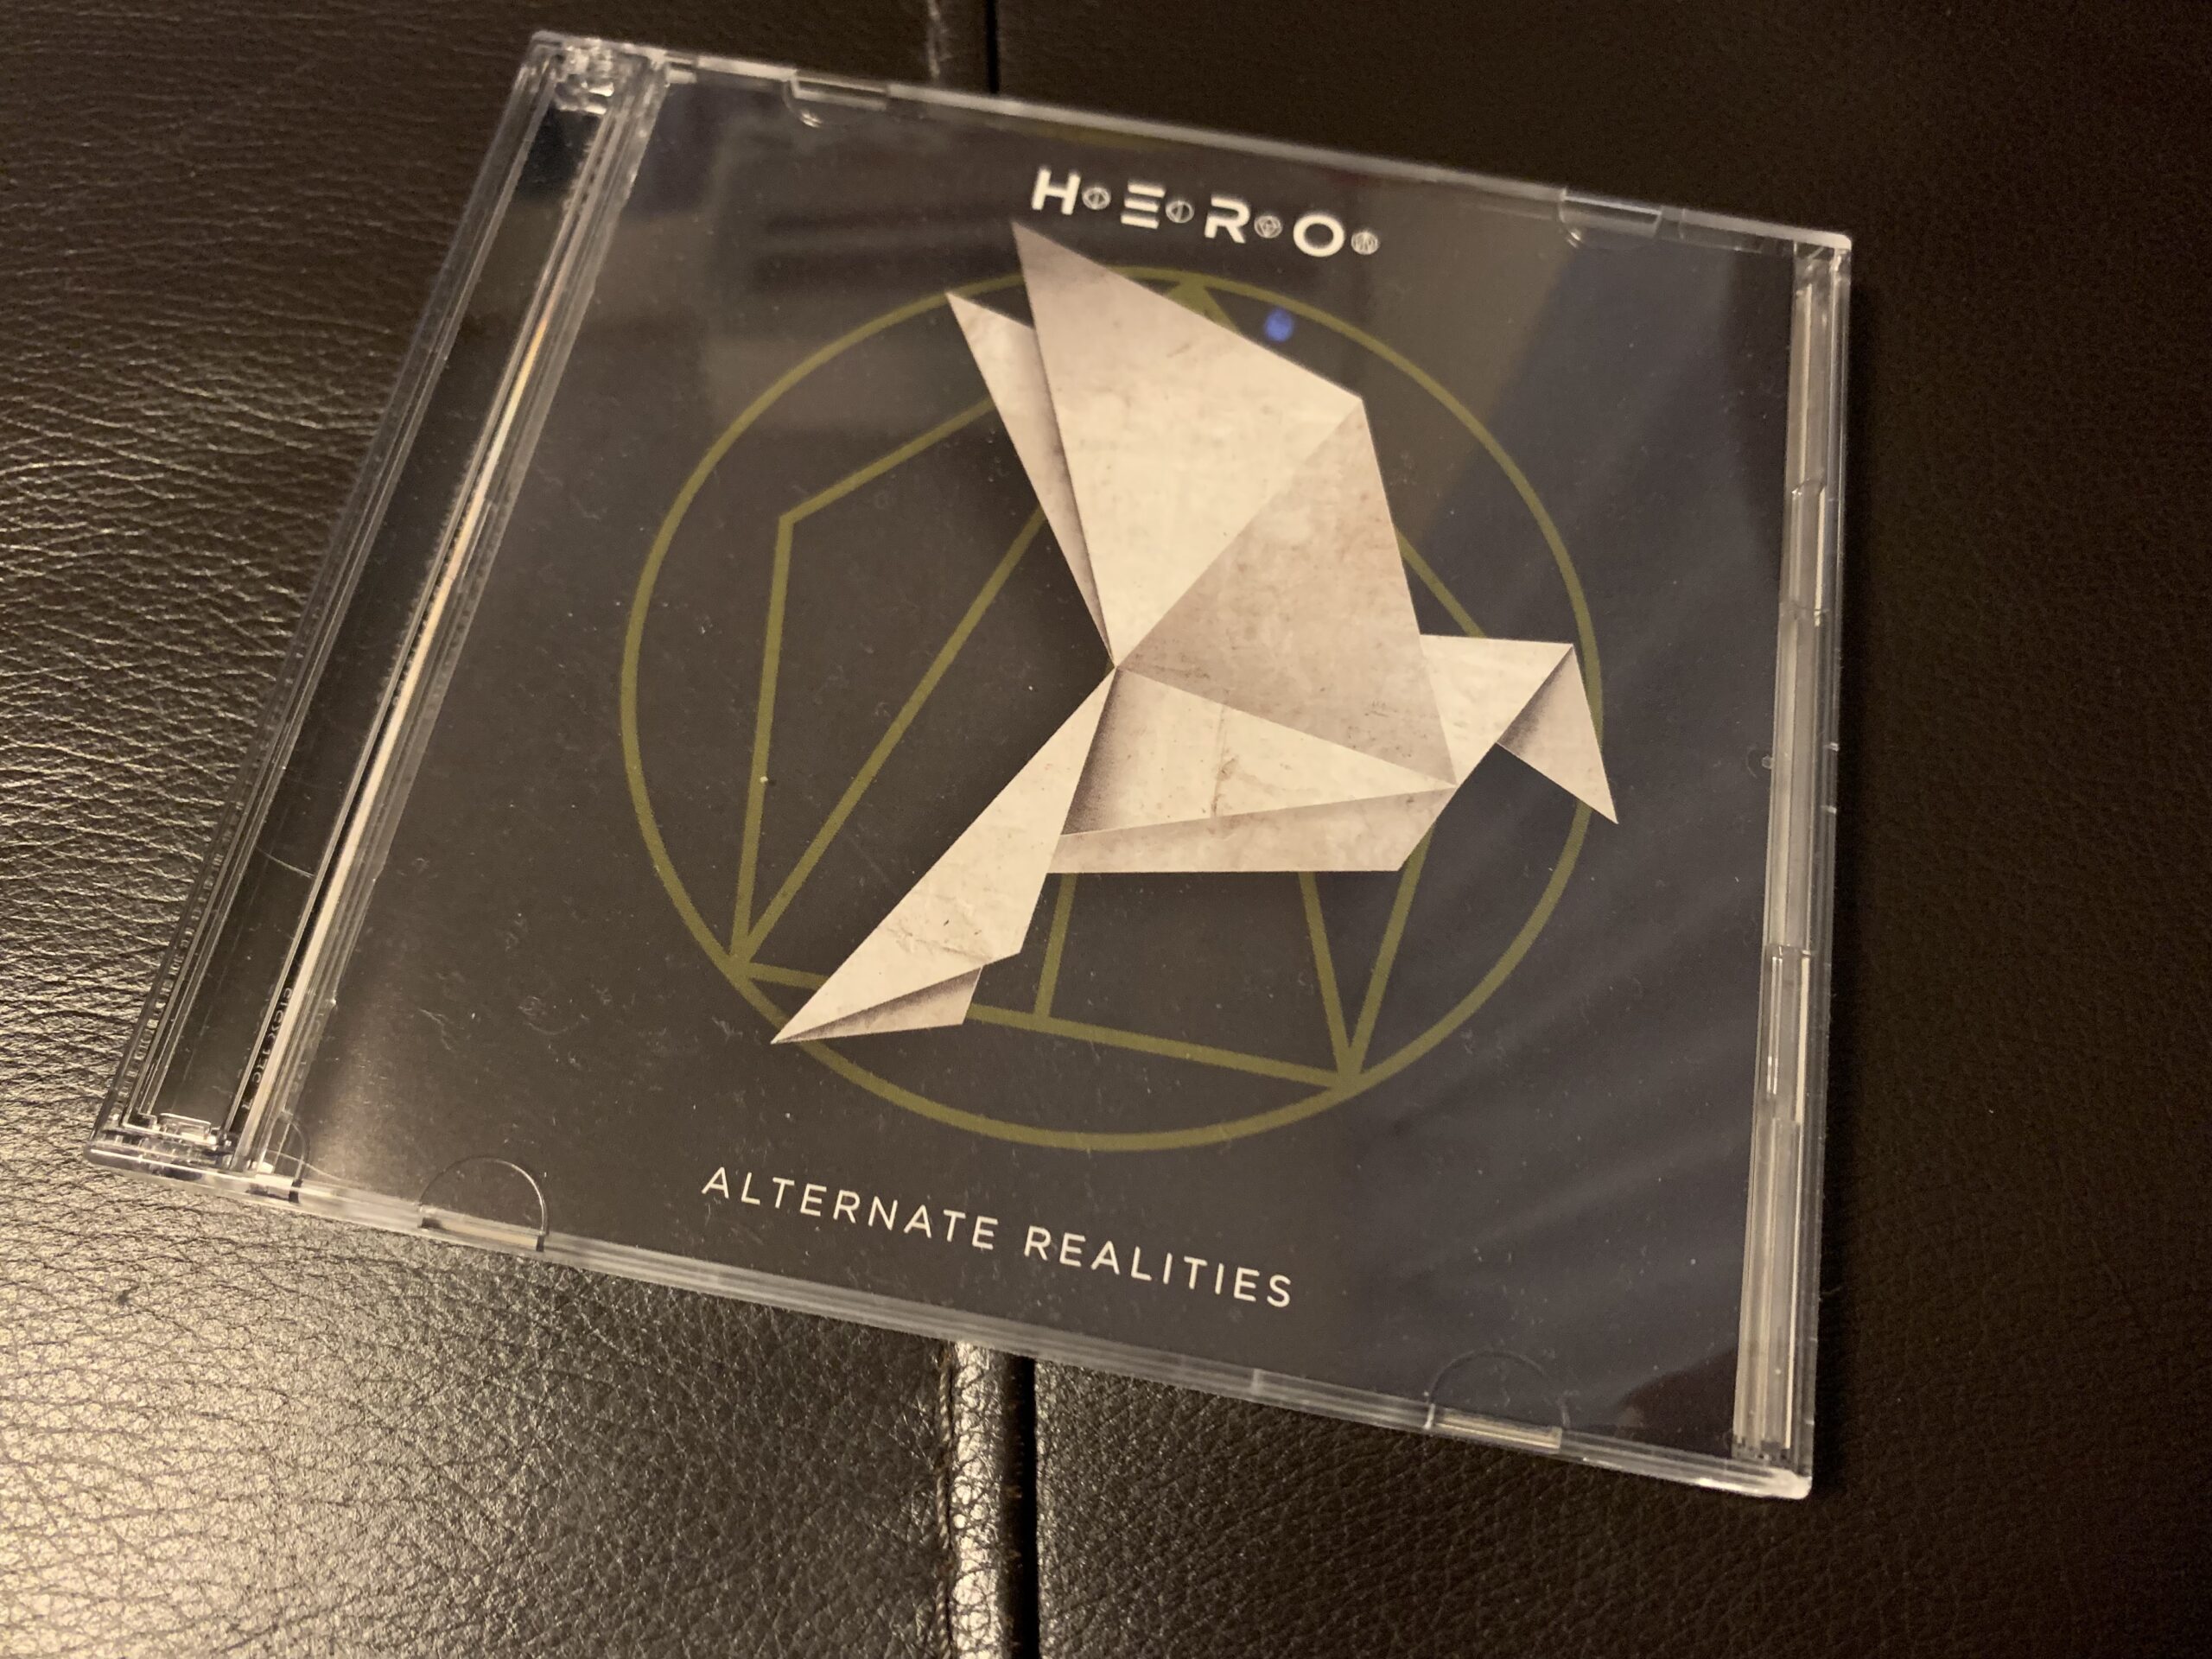 H.E.R.O.の3rdアルバム『Alternate Realities』が素晴らしい